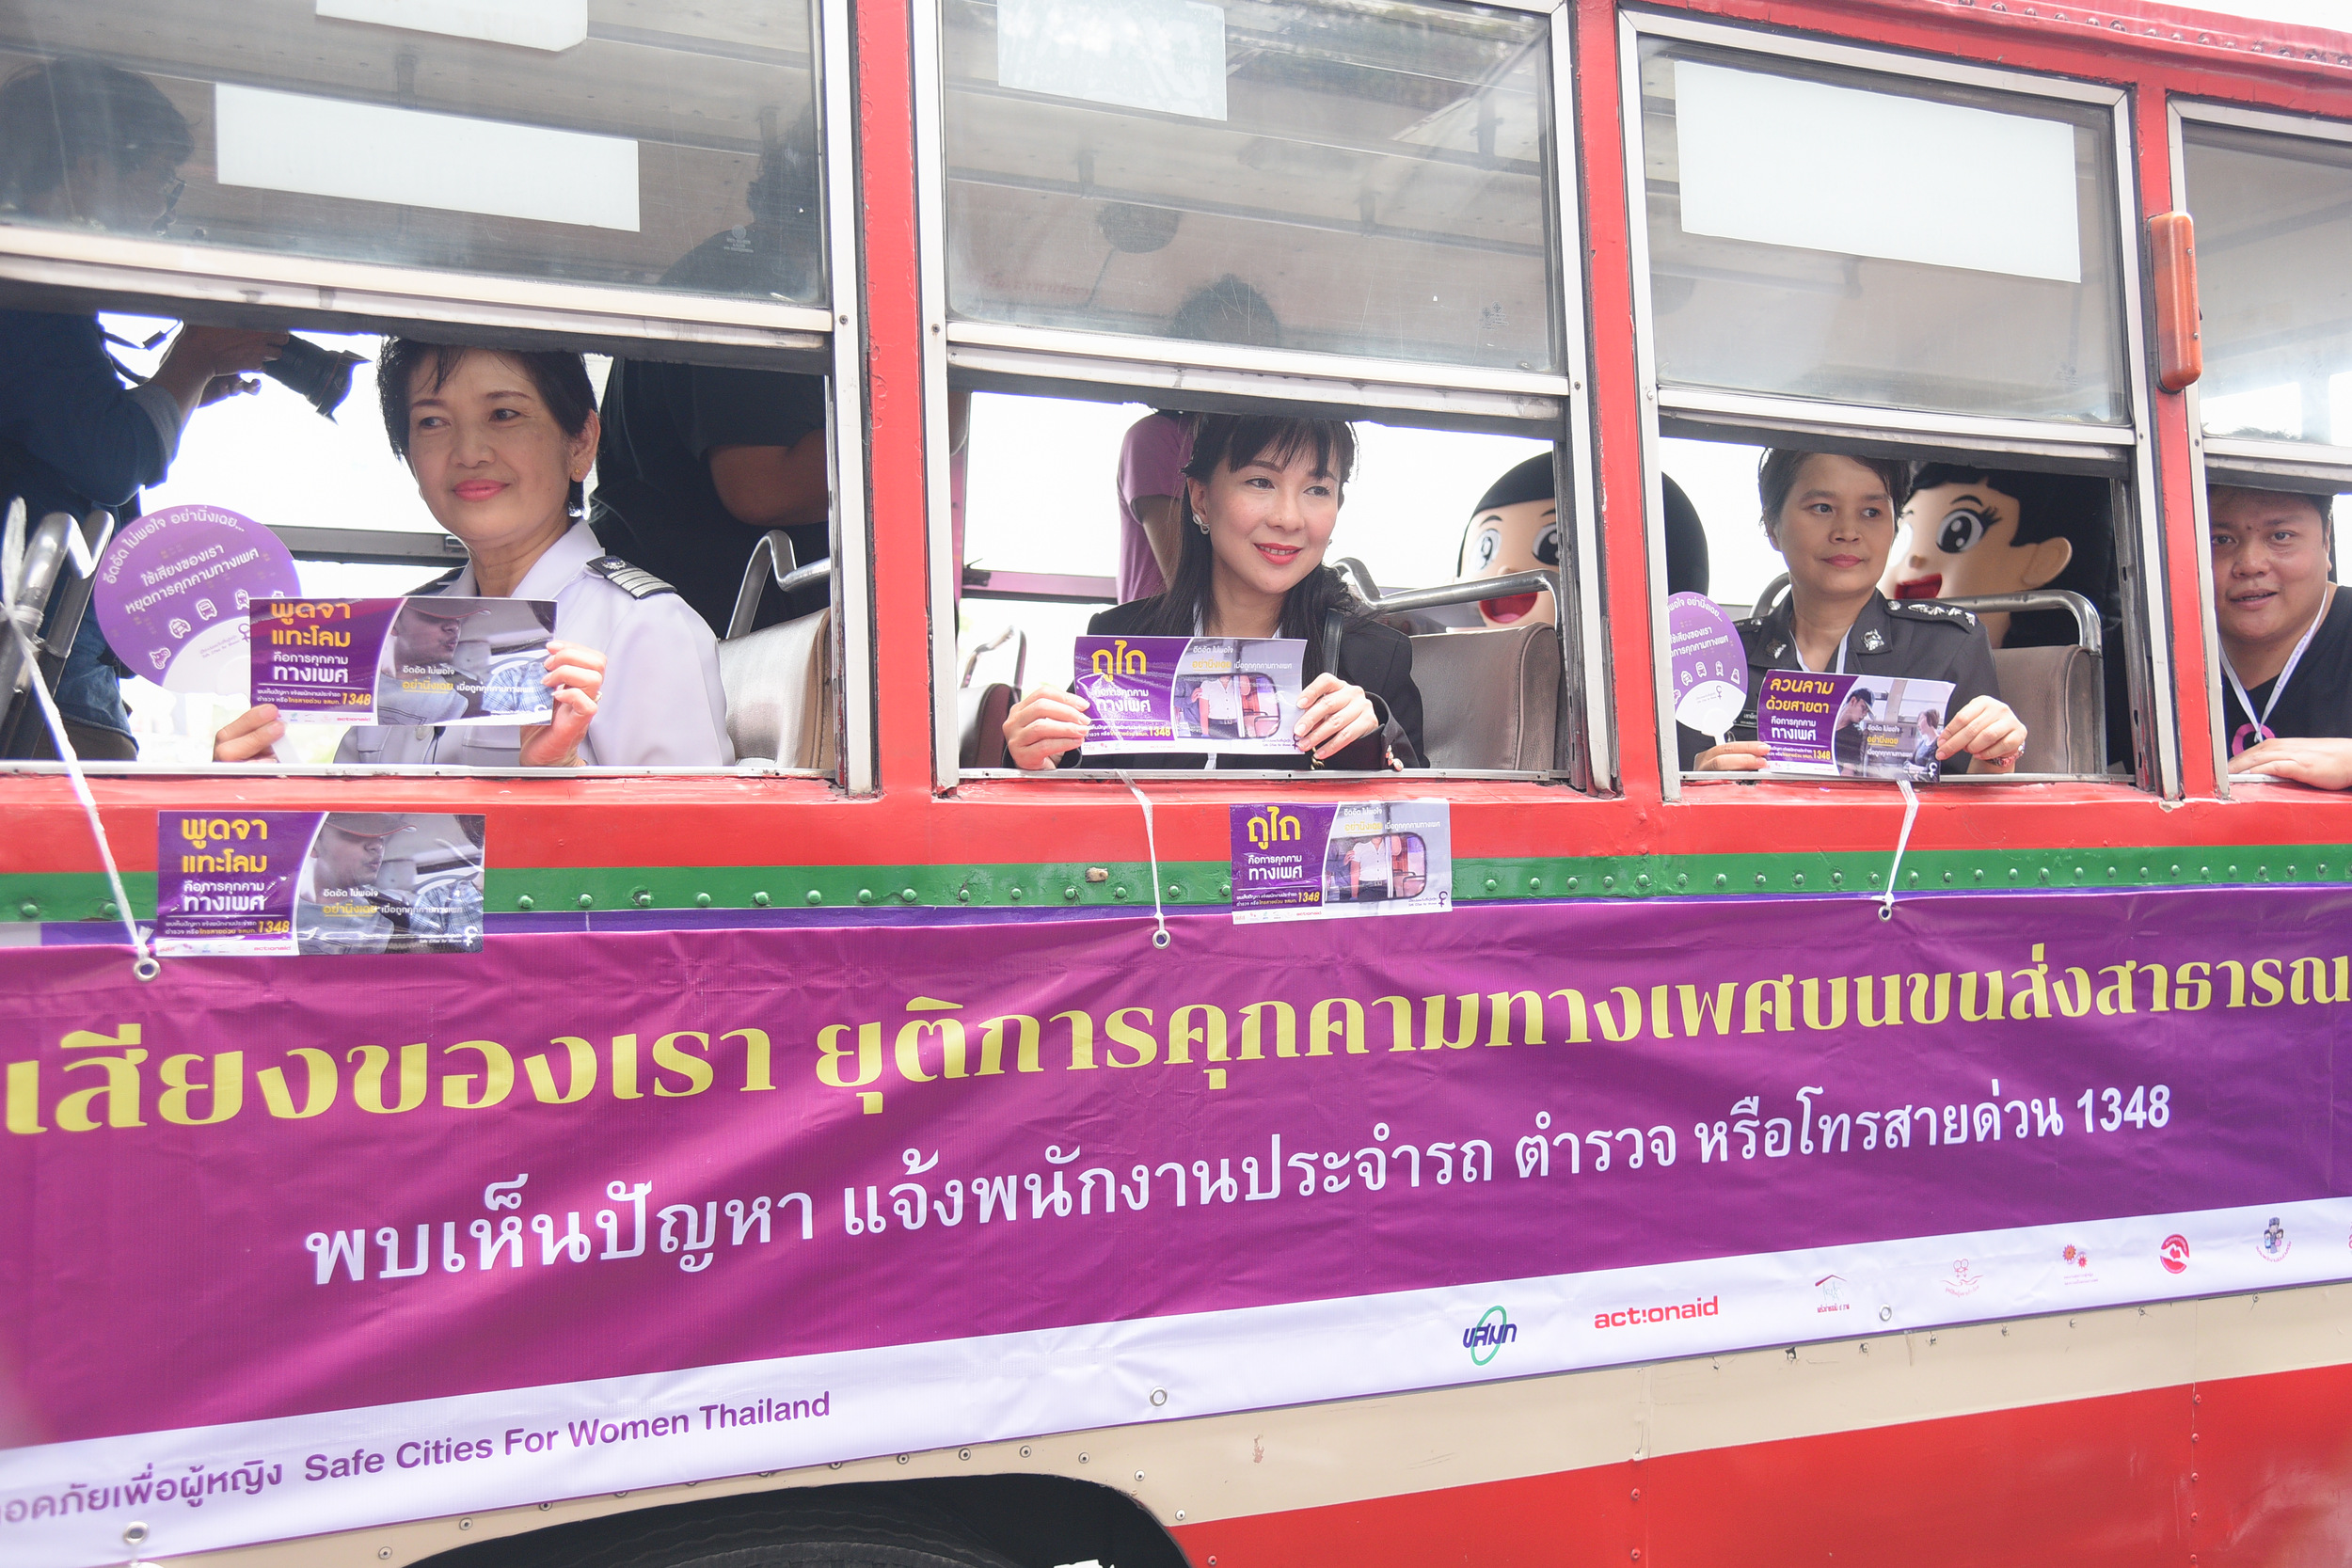 ผู้หญิง 1 ใน 3 เคยถูกคุกคามบนรถสาธารณะ thaihealth